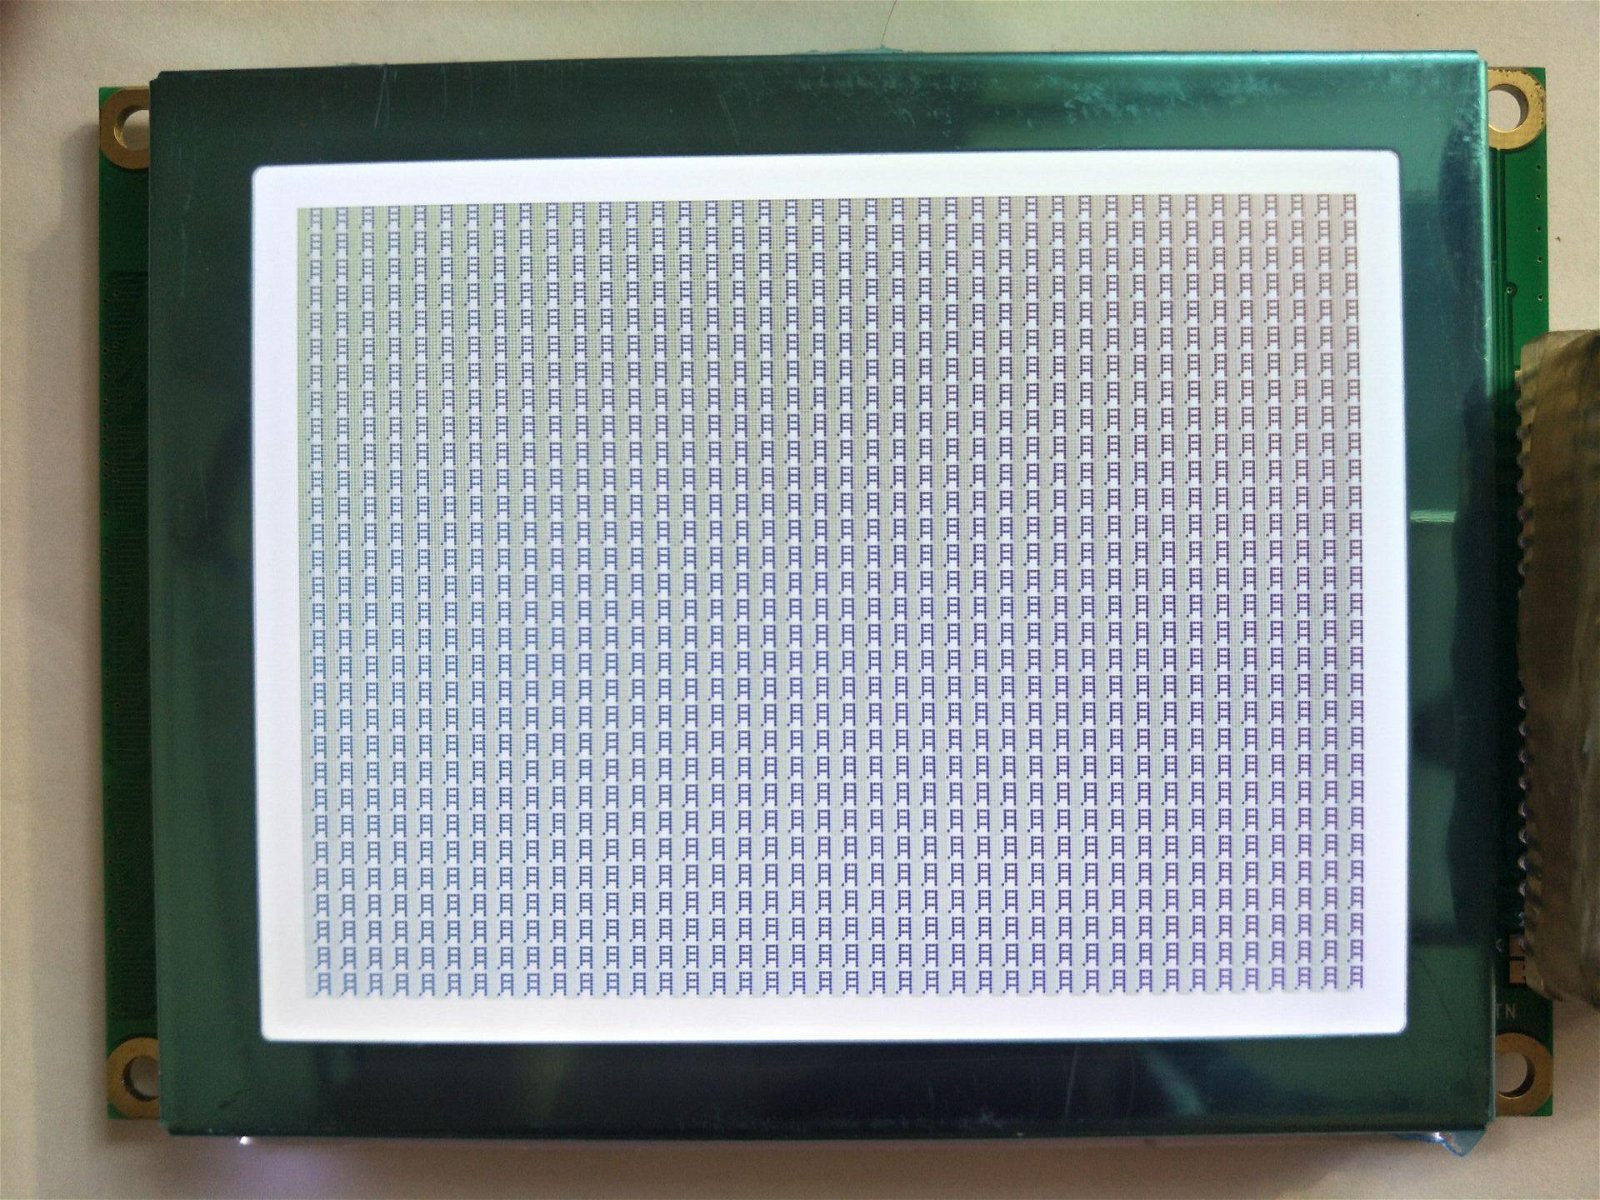 兼容信利5.1寸320240点阵液晶显示模块(LCD,LCM) 3